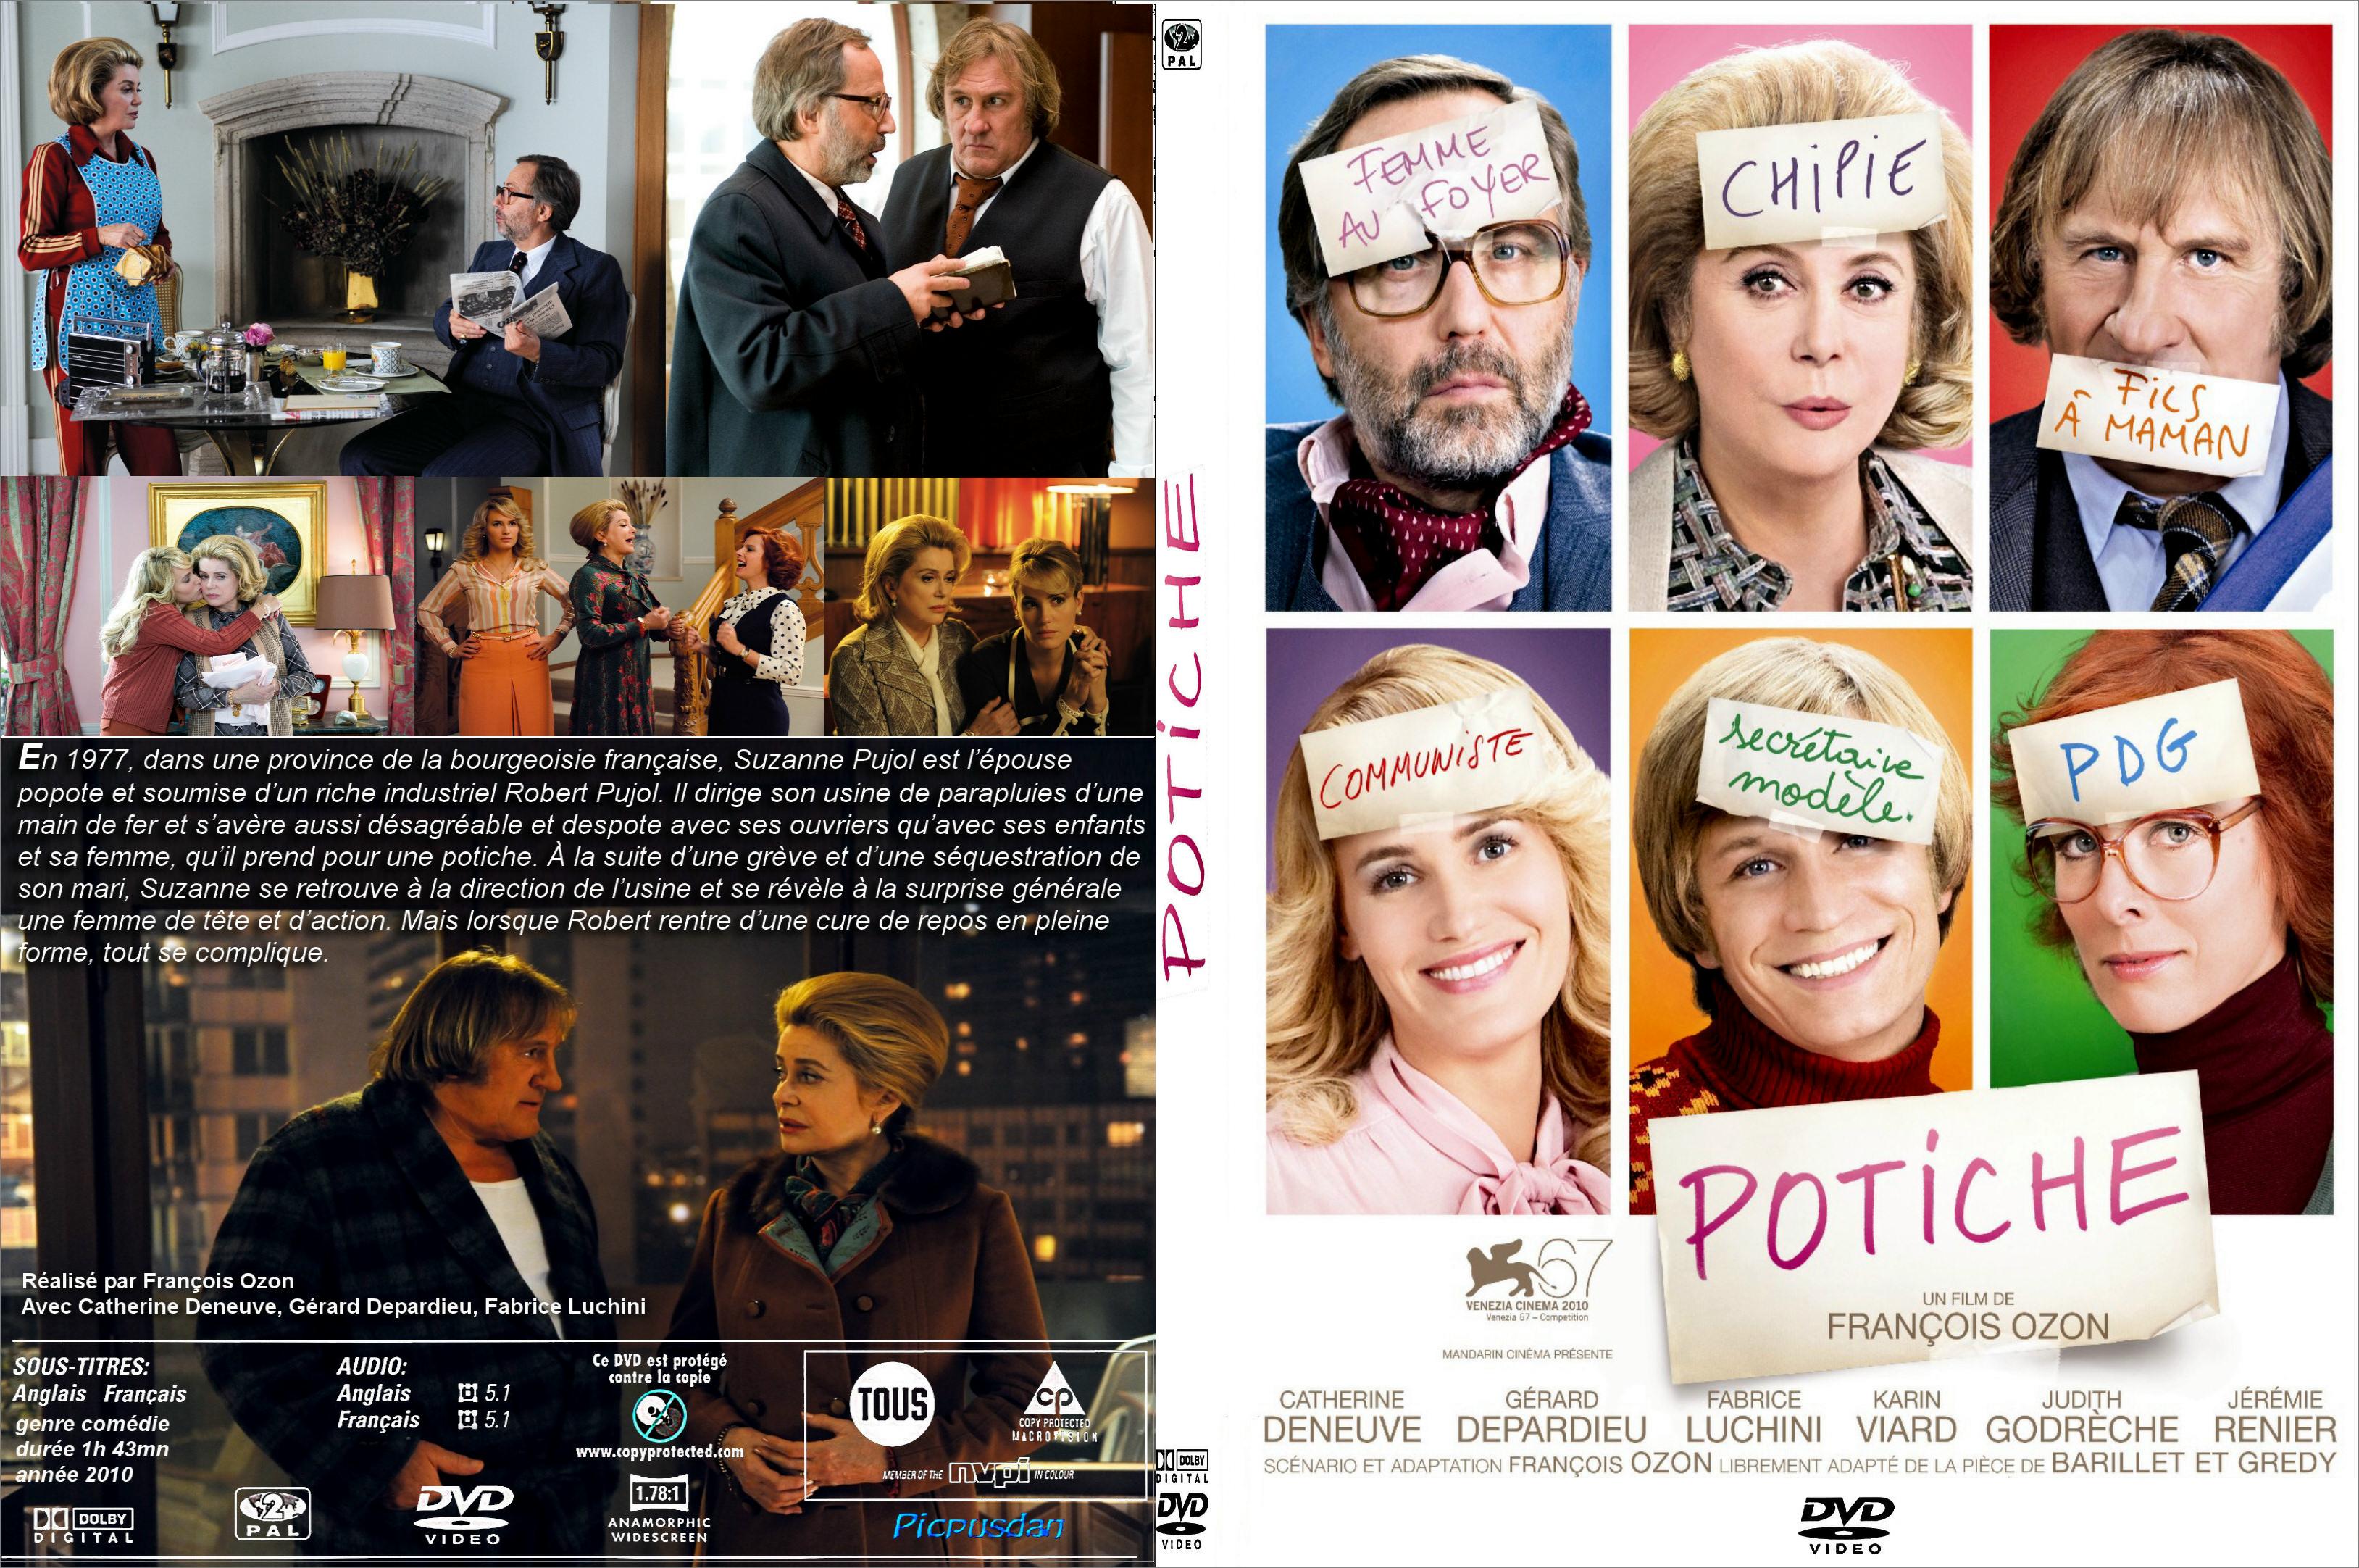 Jaquette DVD Potiche - SLIM